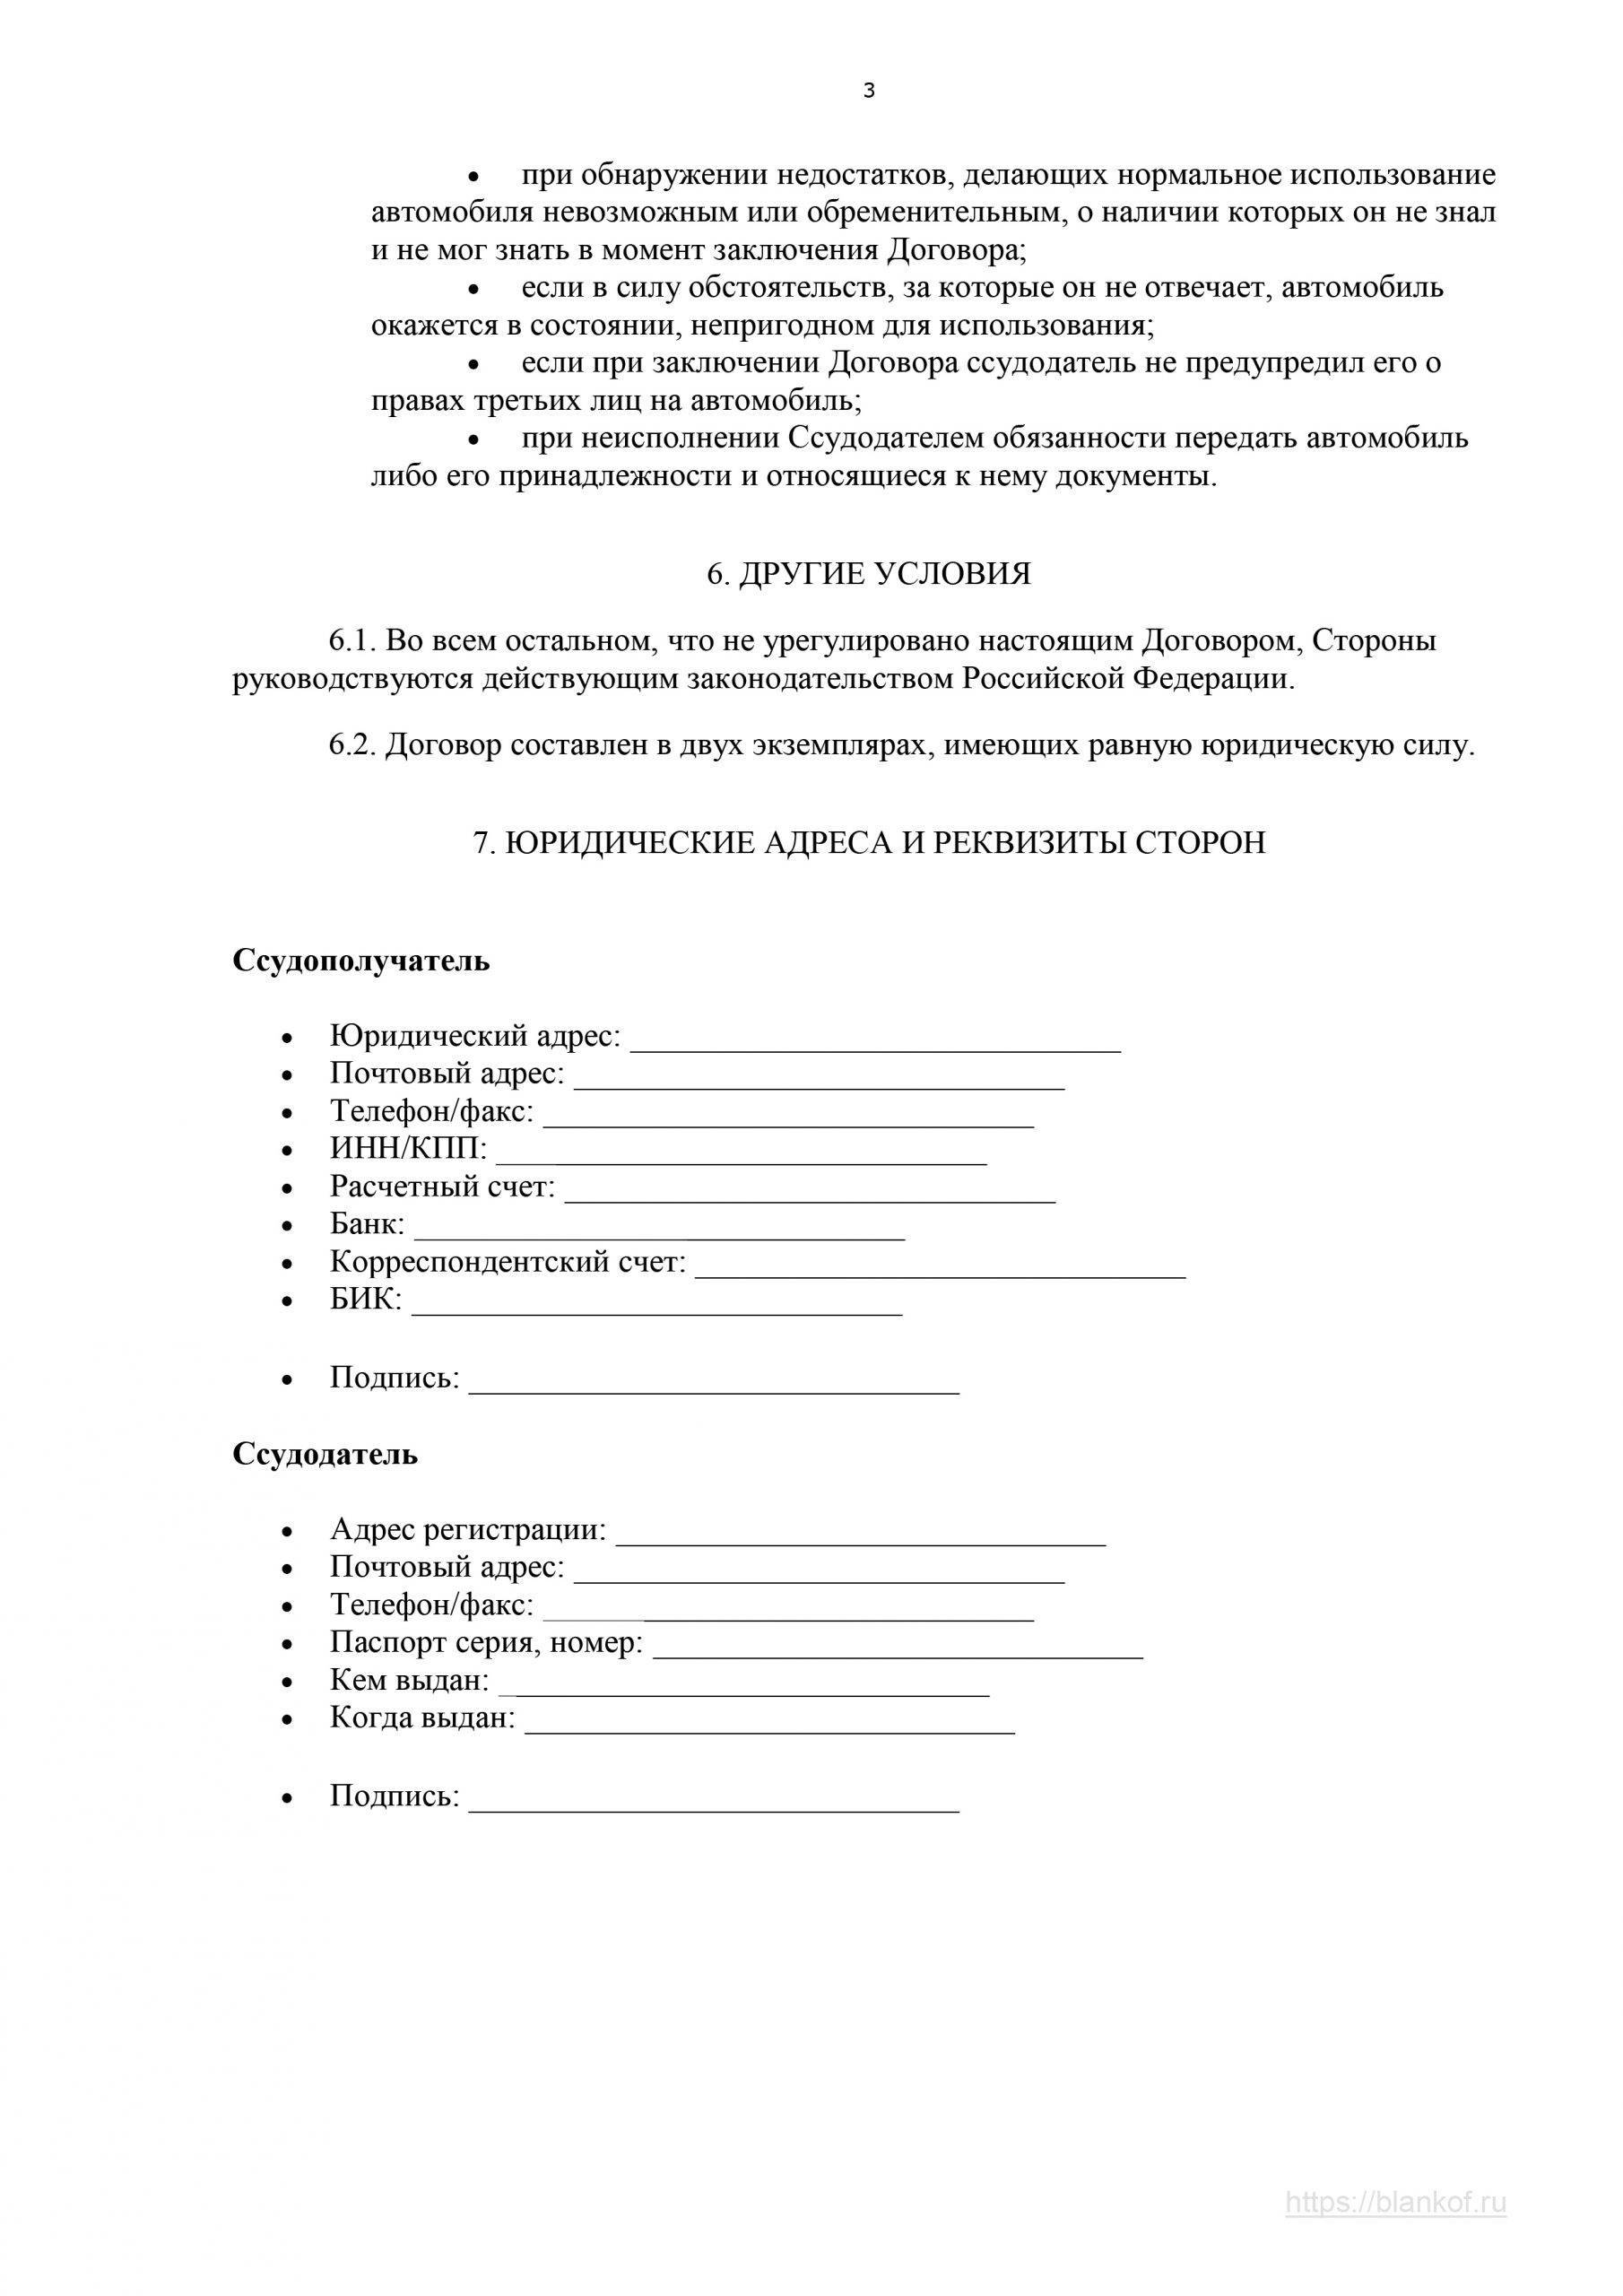 Форма договора безвозмездного пользования автомобилем, заключаемый между юридическим и физическим лицом. домашний-юрист.ру